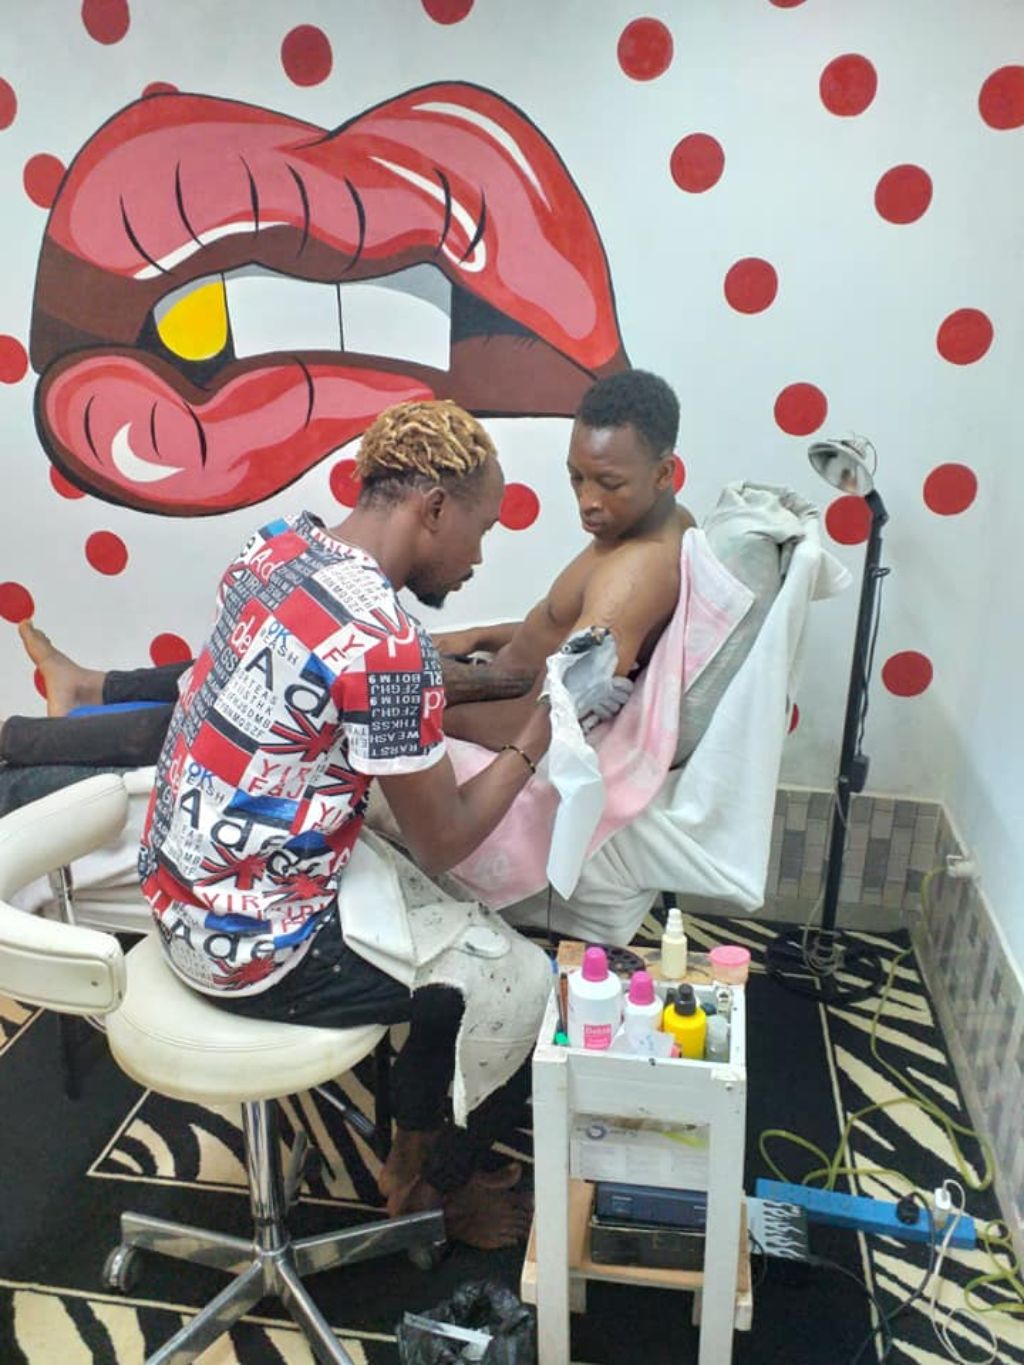 Das Foto zeigt eine Szene in einem Tattoostudio. Der Tätowierer ritzt ein Tattoo in den Arm eines Kunden.